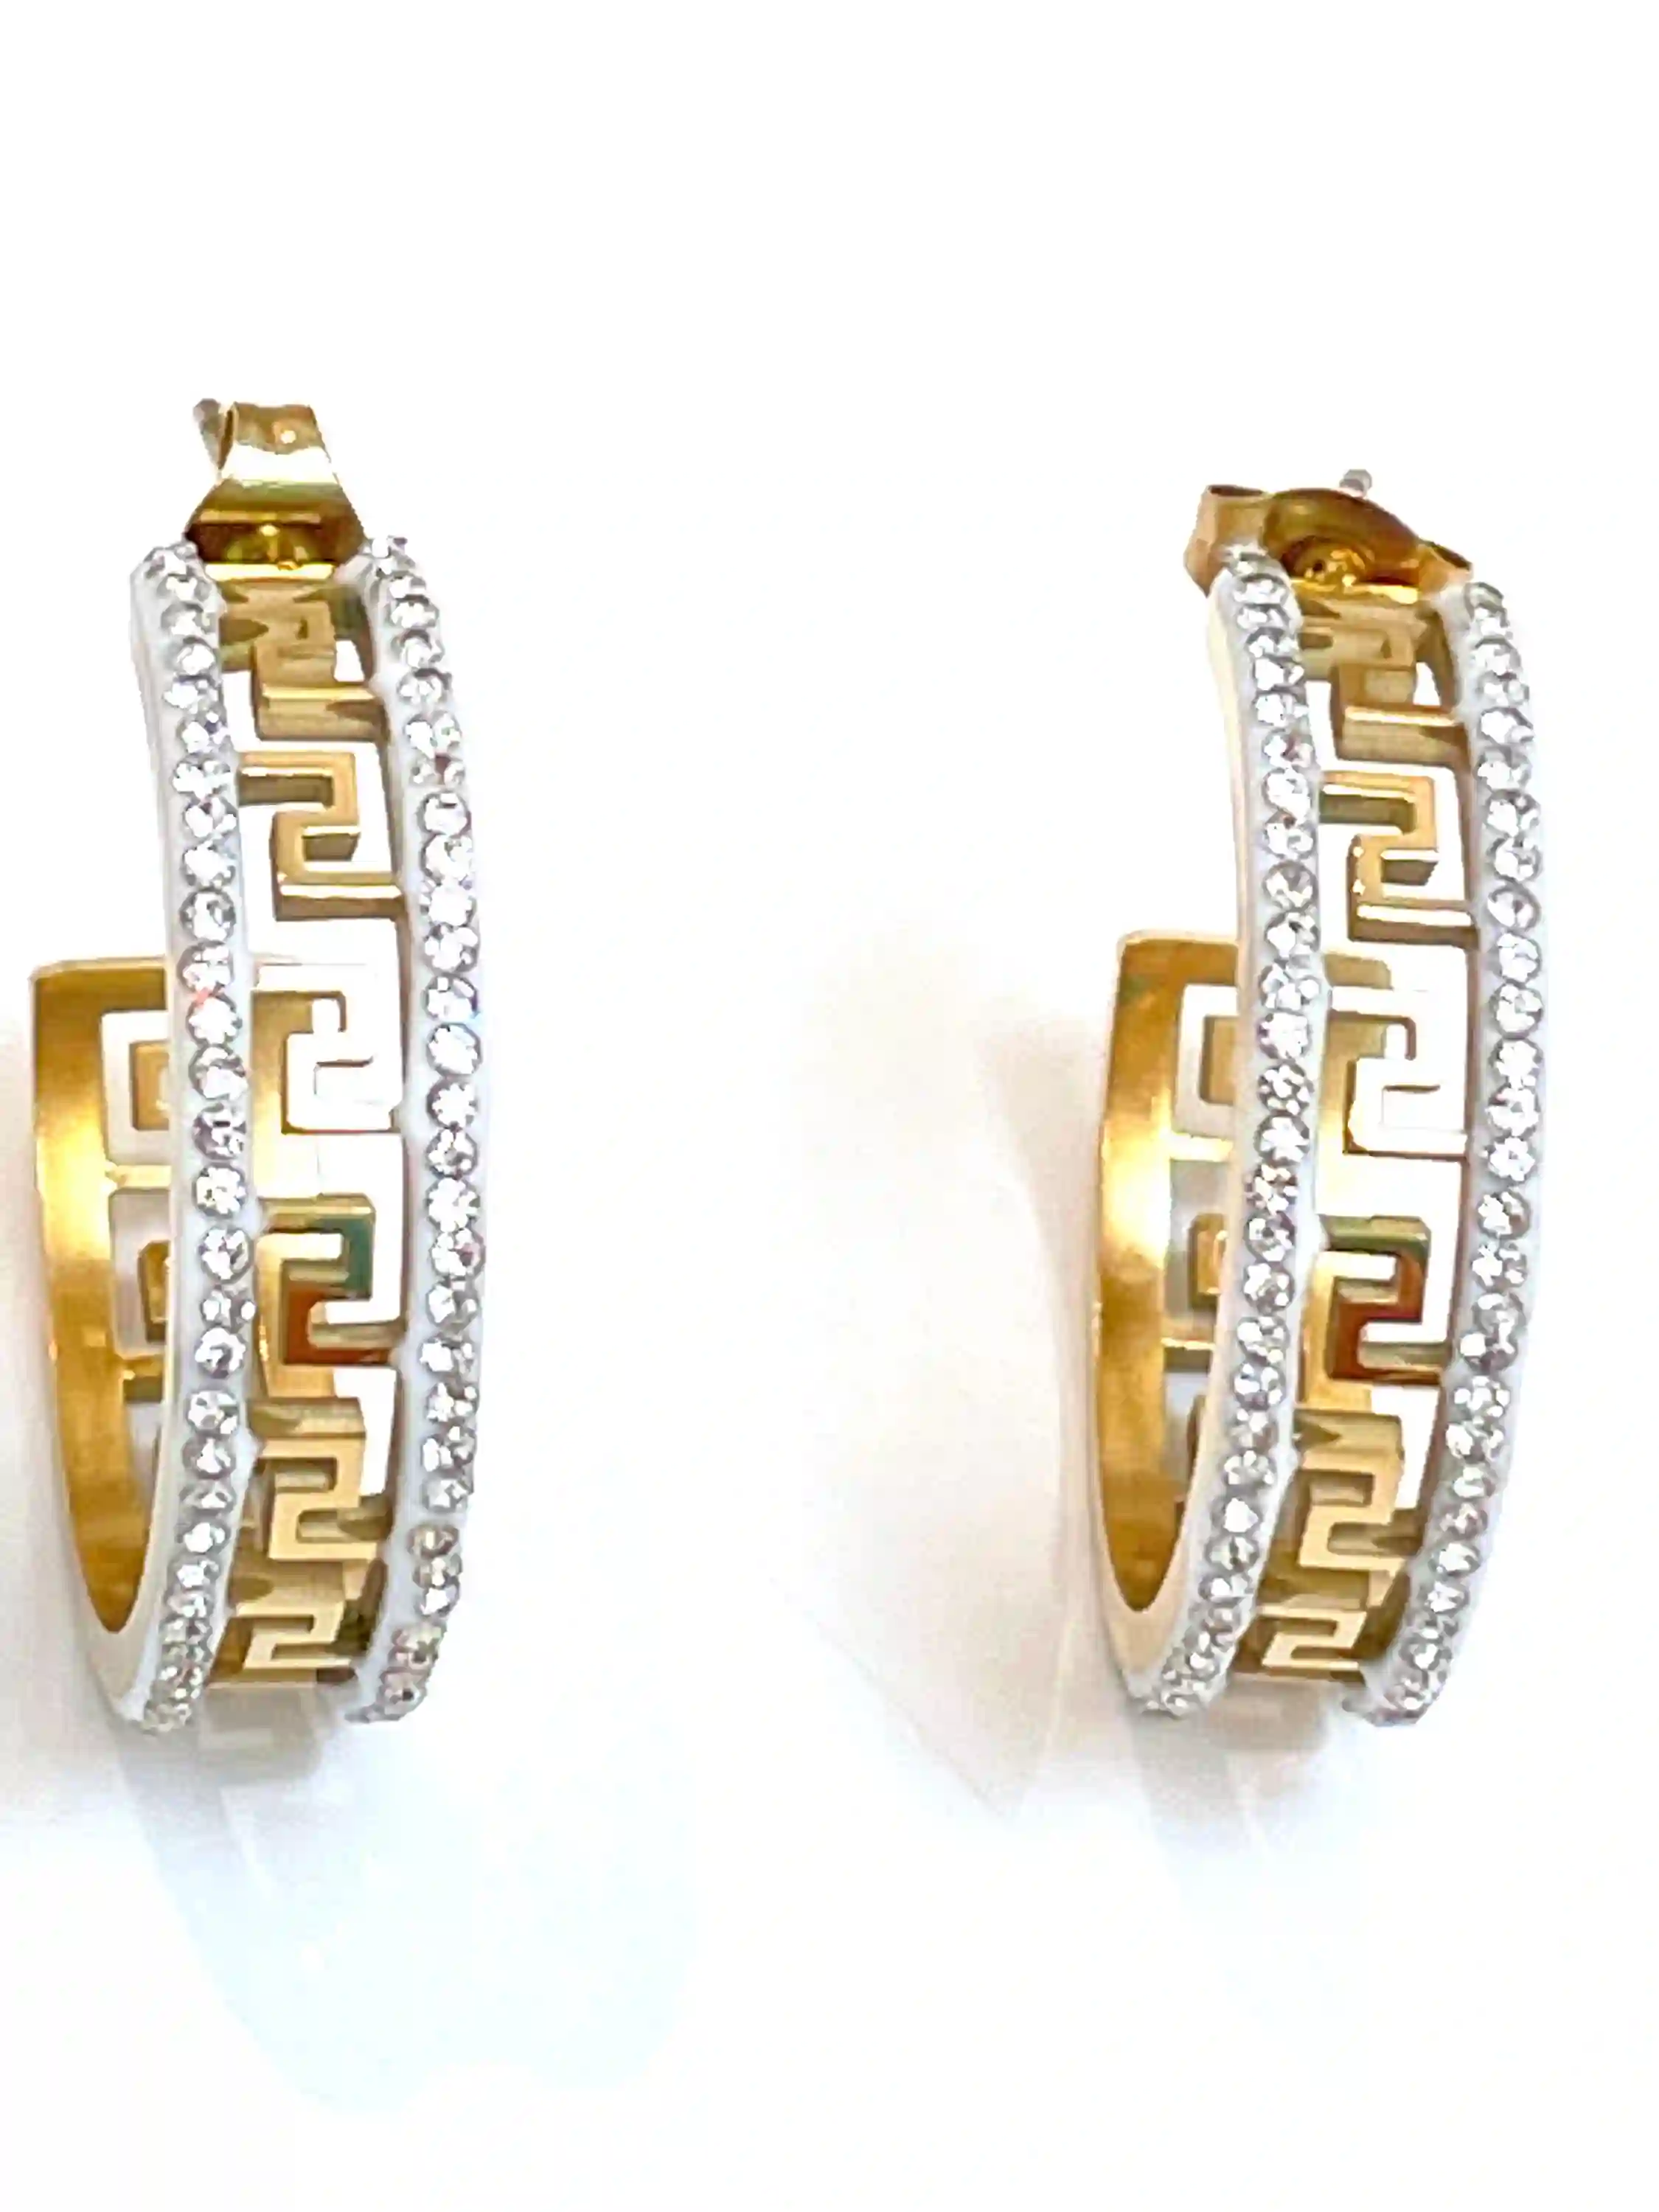 18k Yellow Gold Greek Key Design Diamond Meander Earrings Greek Key Hoop Earrings Greek Key Pattern Jewelry 136 Austrian Crystal Diamonds 